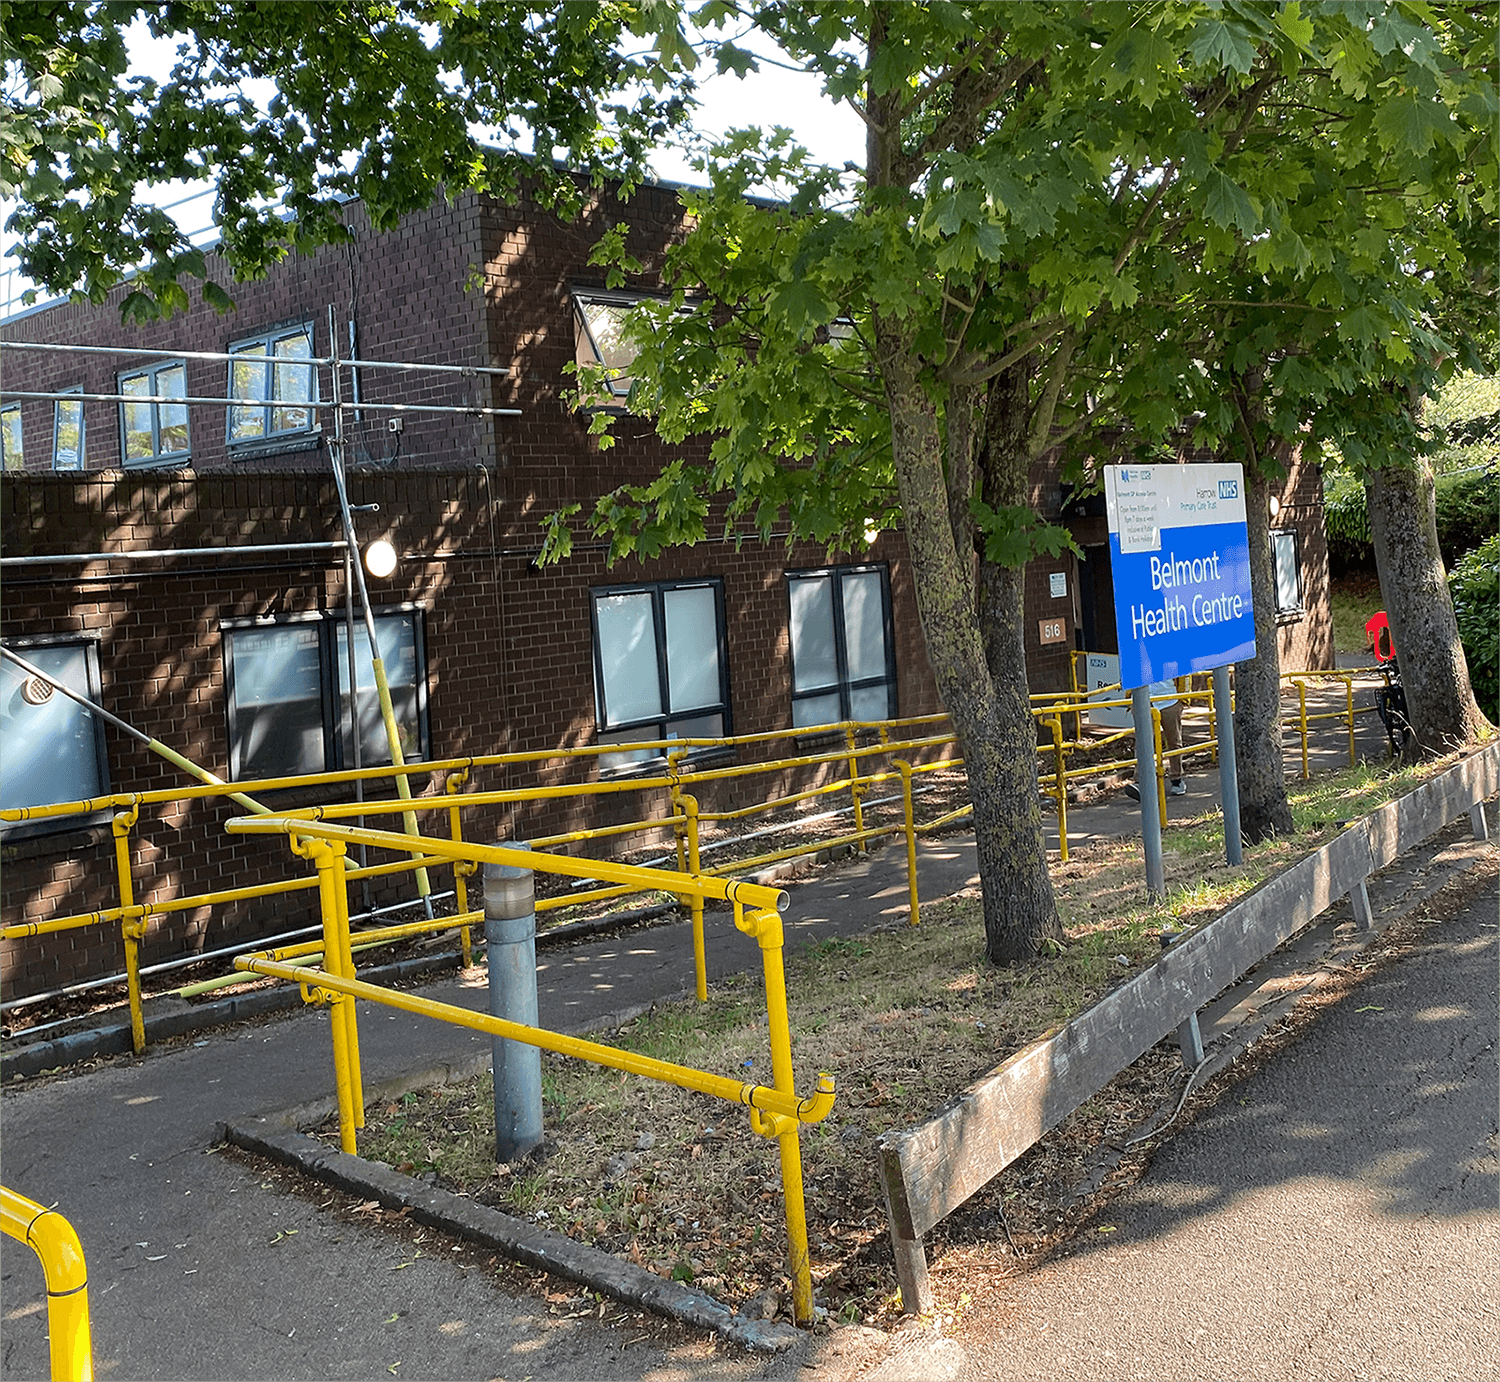 Belmont health centre refurbishment